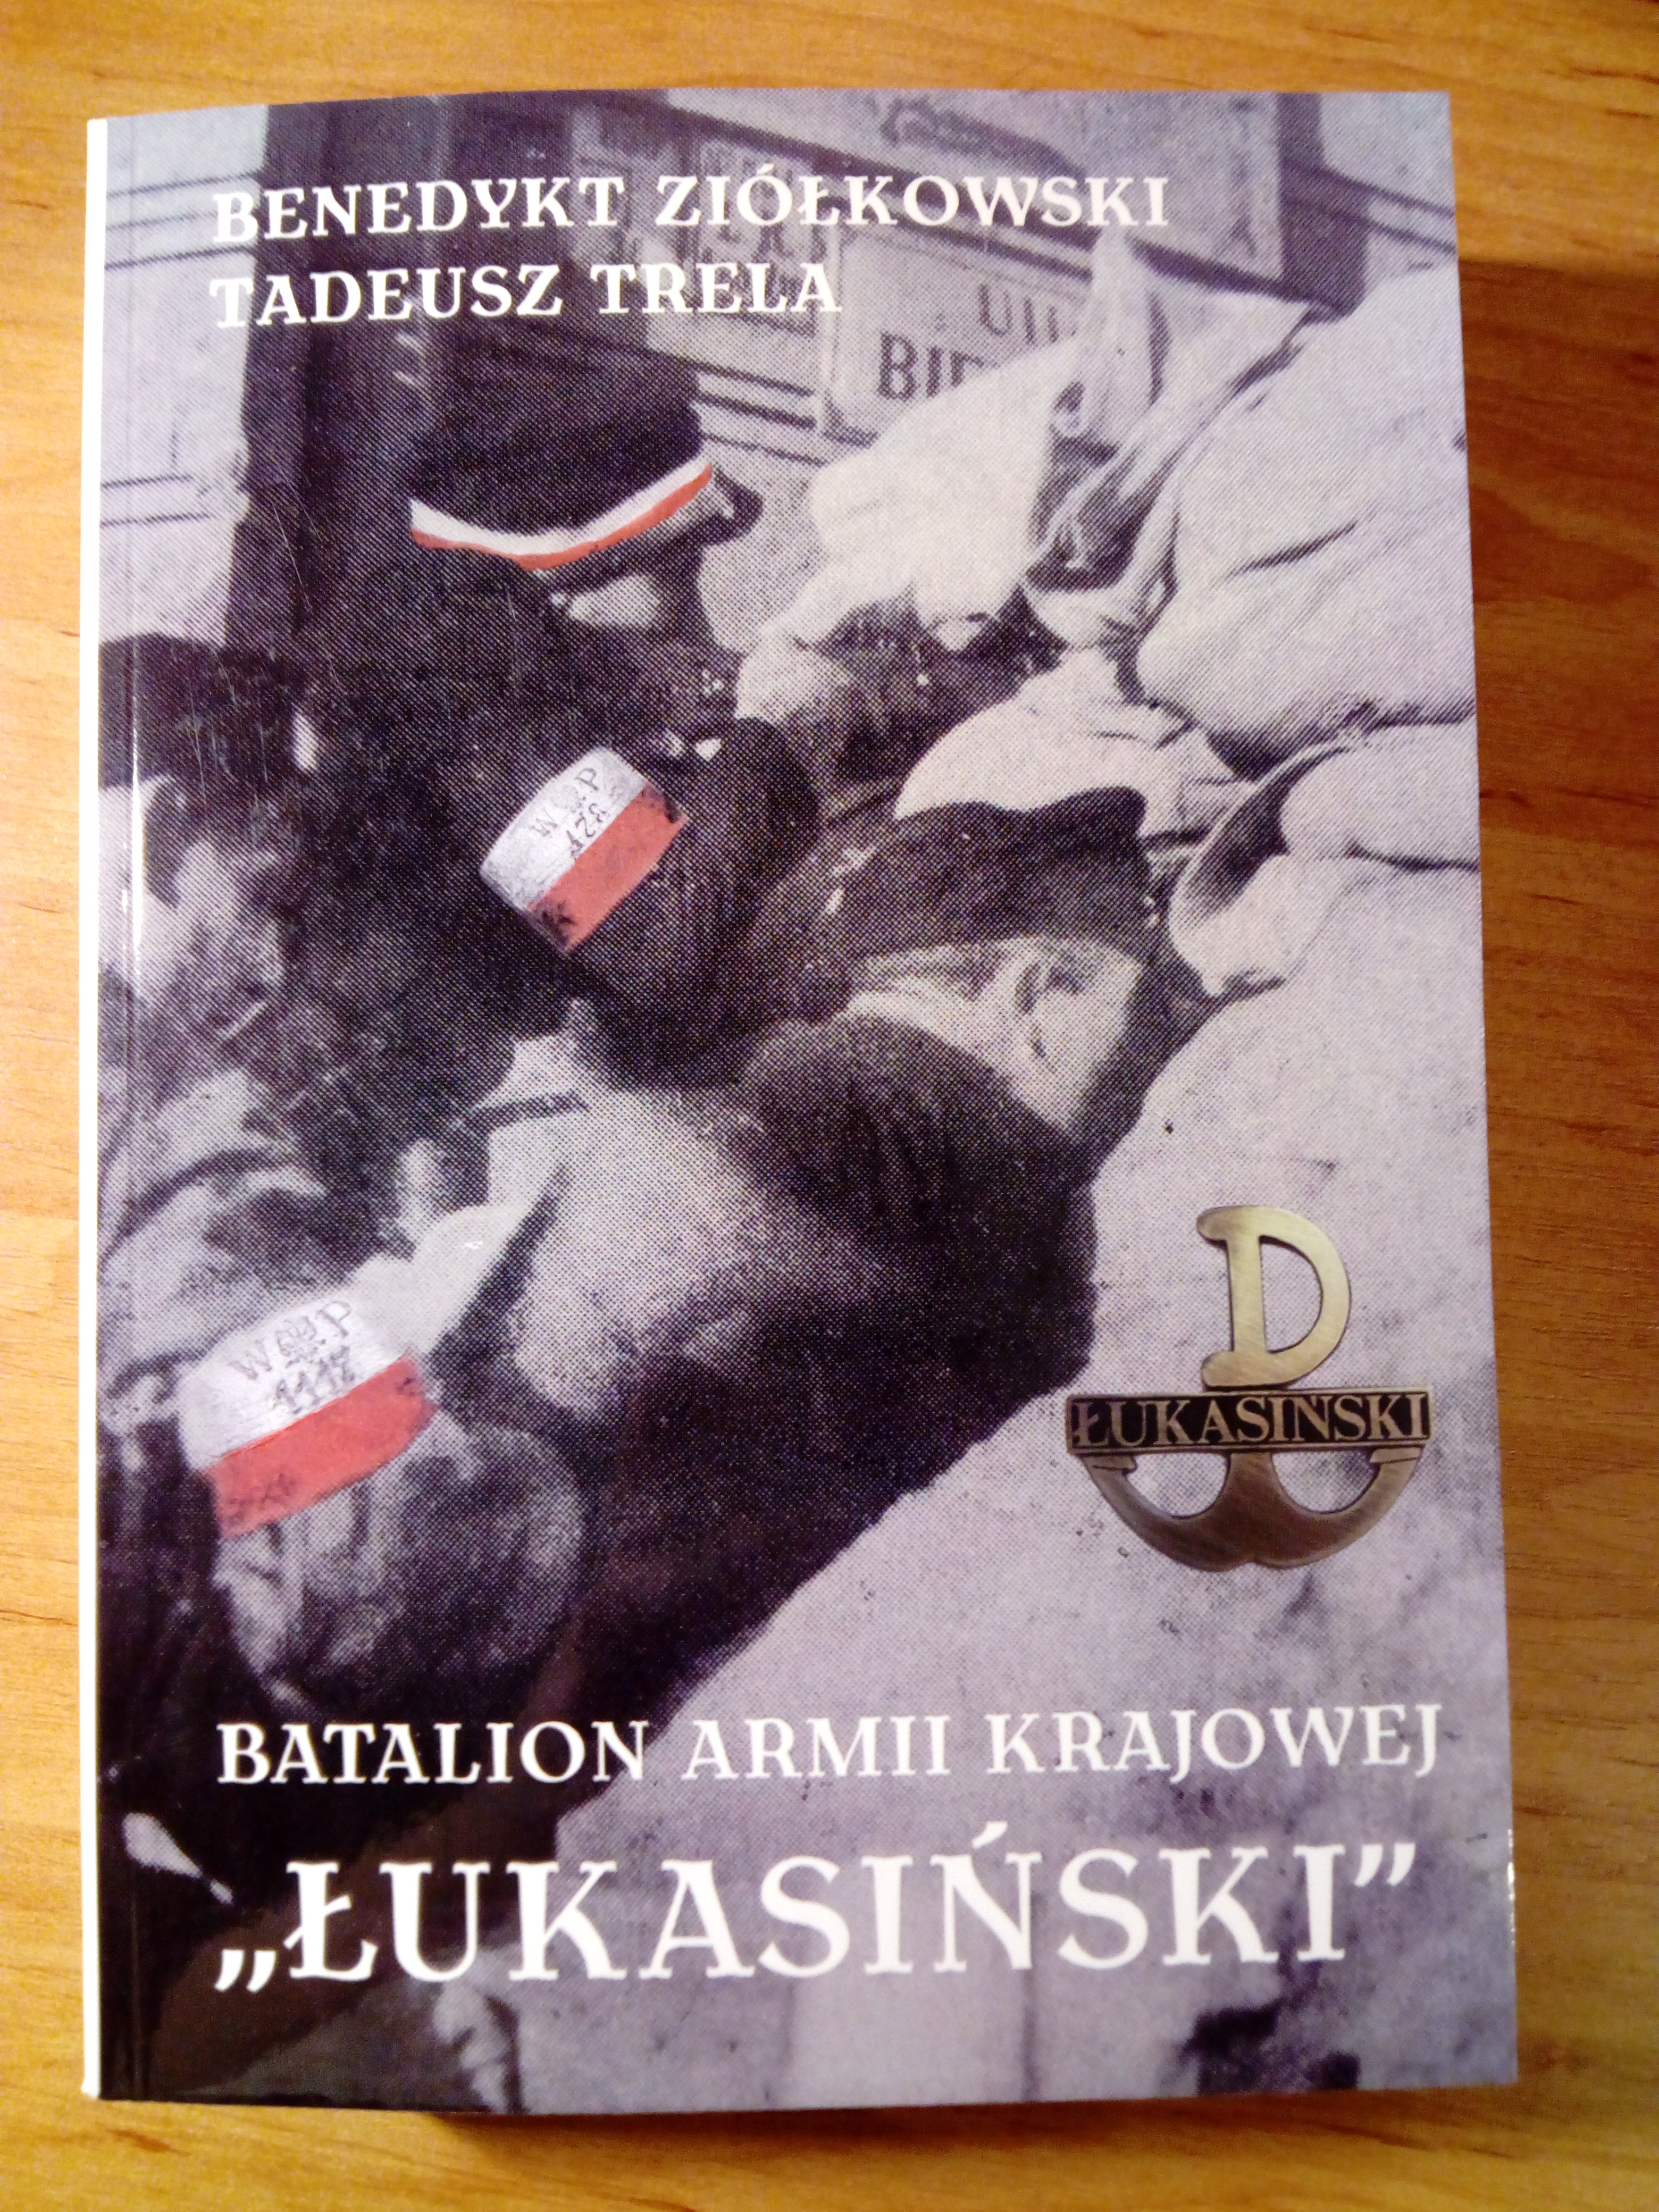 Batalion Armii Krajowej "Łukasiński" broszura (B.Ziółkowski Tadeusz Trela)